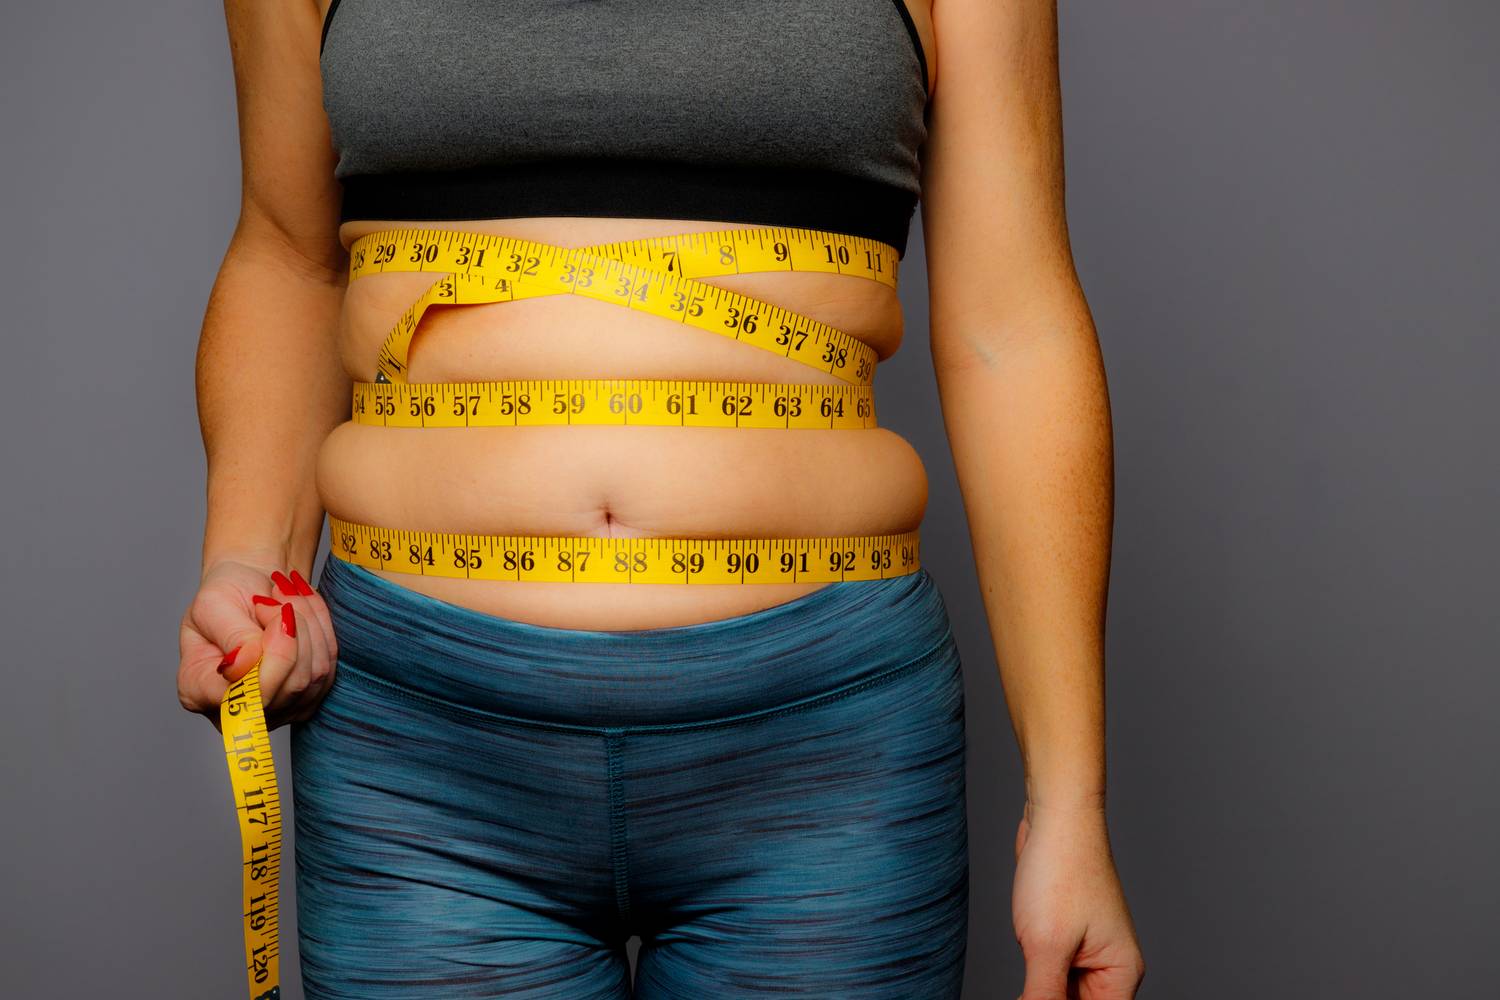 hogyan lehet lefogyni három hónapon belül perimenopause, ami súlycsökkenést okoz